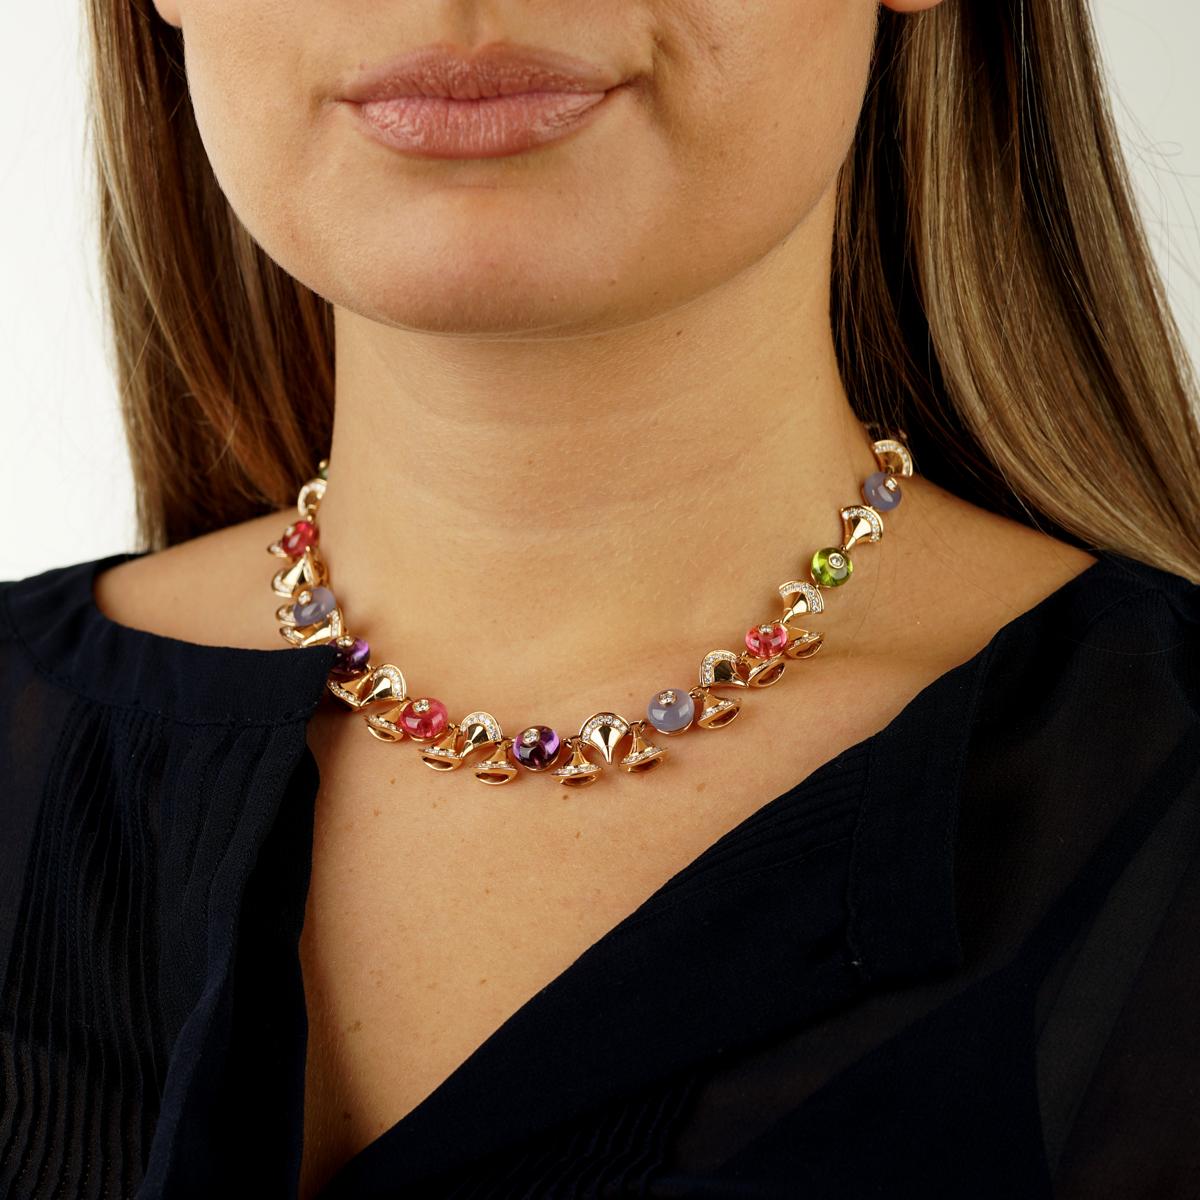 Eine prächtige Bulgari Divas Dream Halskette mit 13,7ct Amethyst, Peridot von insgesamt 11,45 Karat, Rubellit von insgesamt 8,90 Karat und rundem Chalzedon von insgesamt 10,80 Karat. 
Die Diamanten belaufen sich auf insgesamt 3,45 Karat feinster